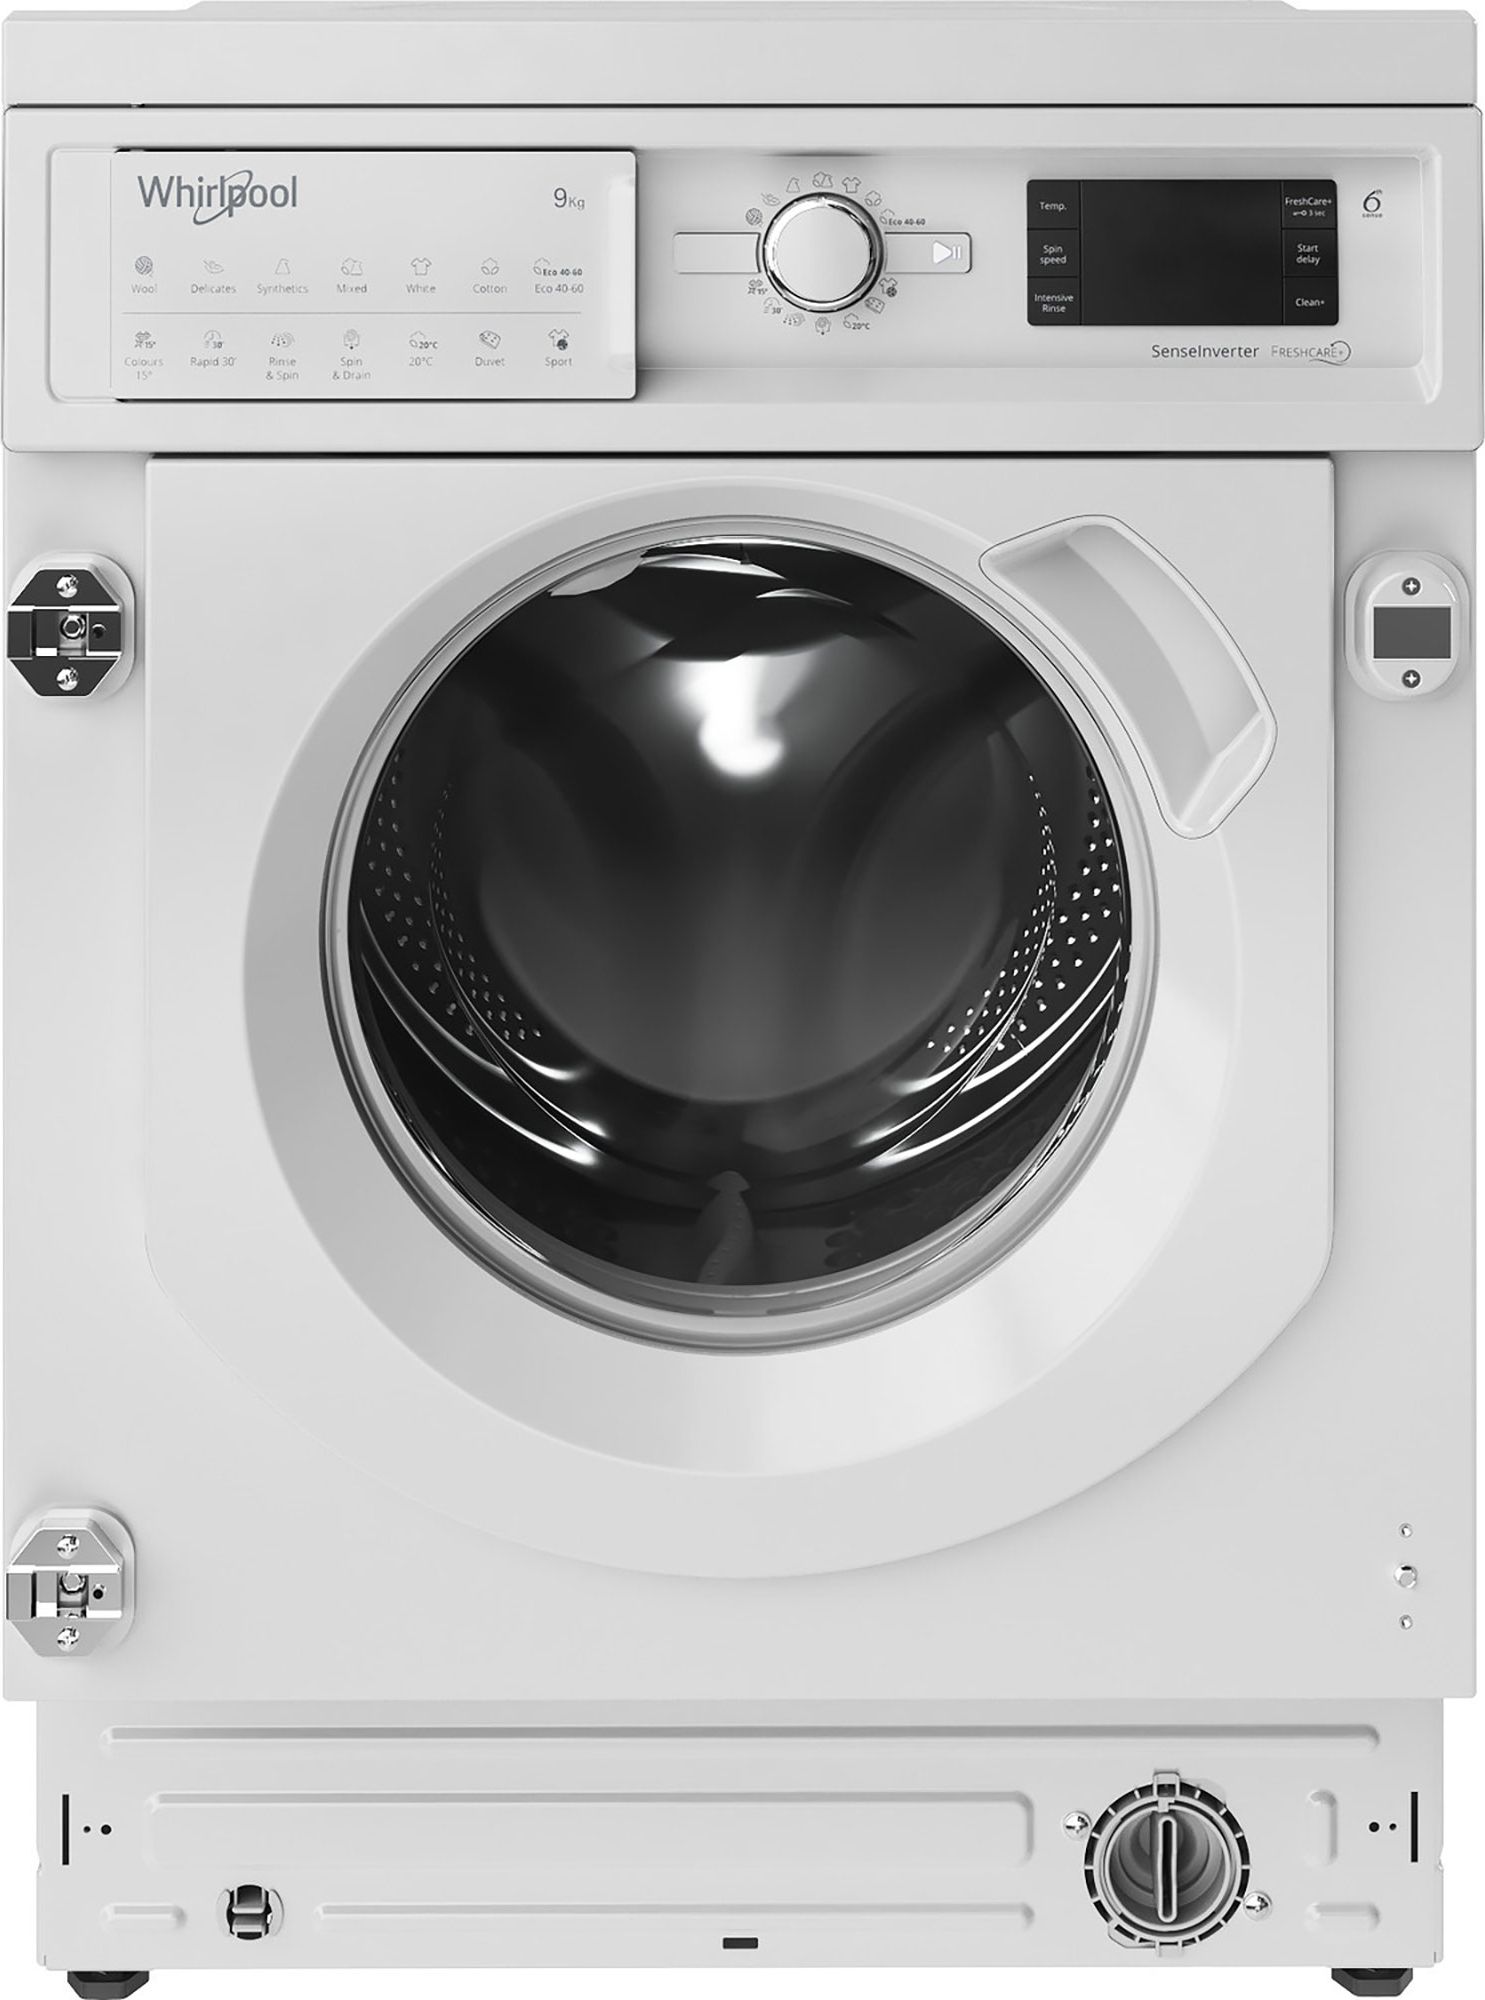 Whirlpool BIWMWG91485UK Integrated 9kg Washing Machine with 1400 rpm - White - B Rated, White